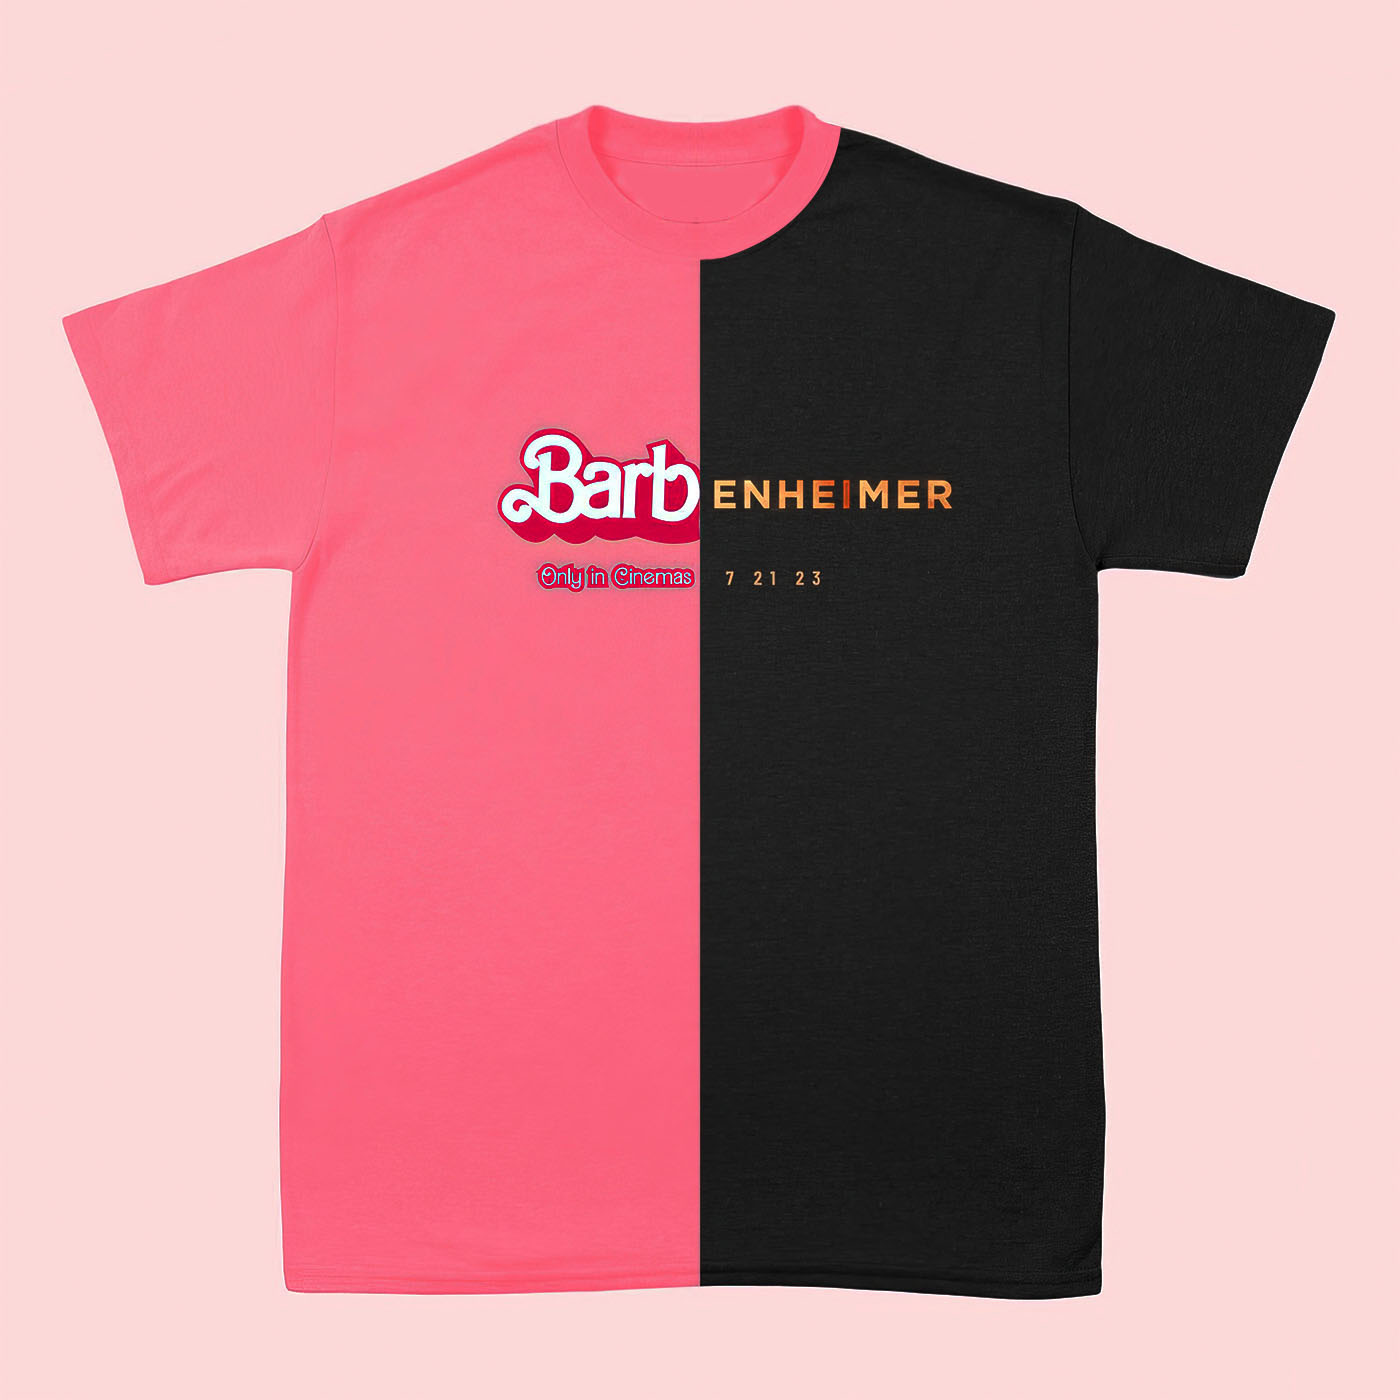 Barb Only In Cinemas x Oppenheimer shirt